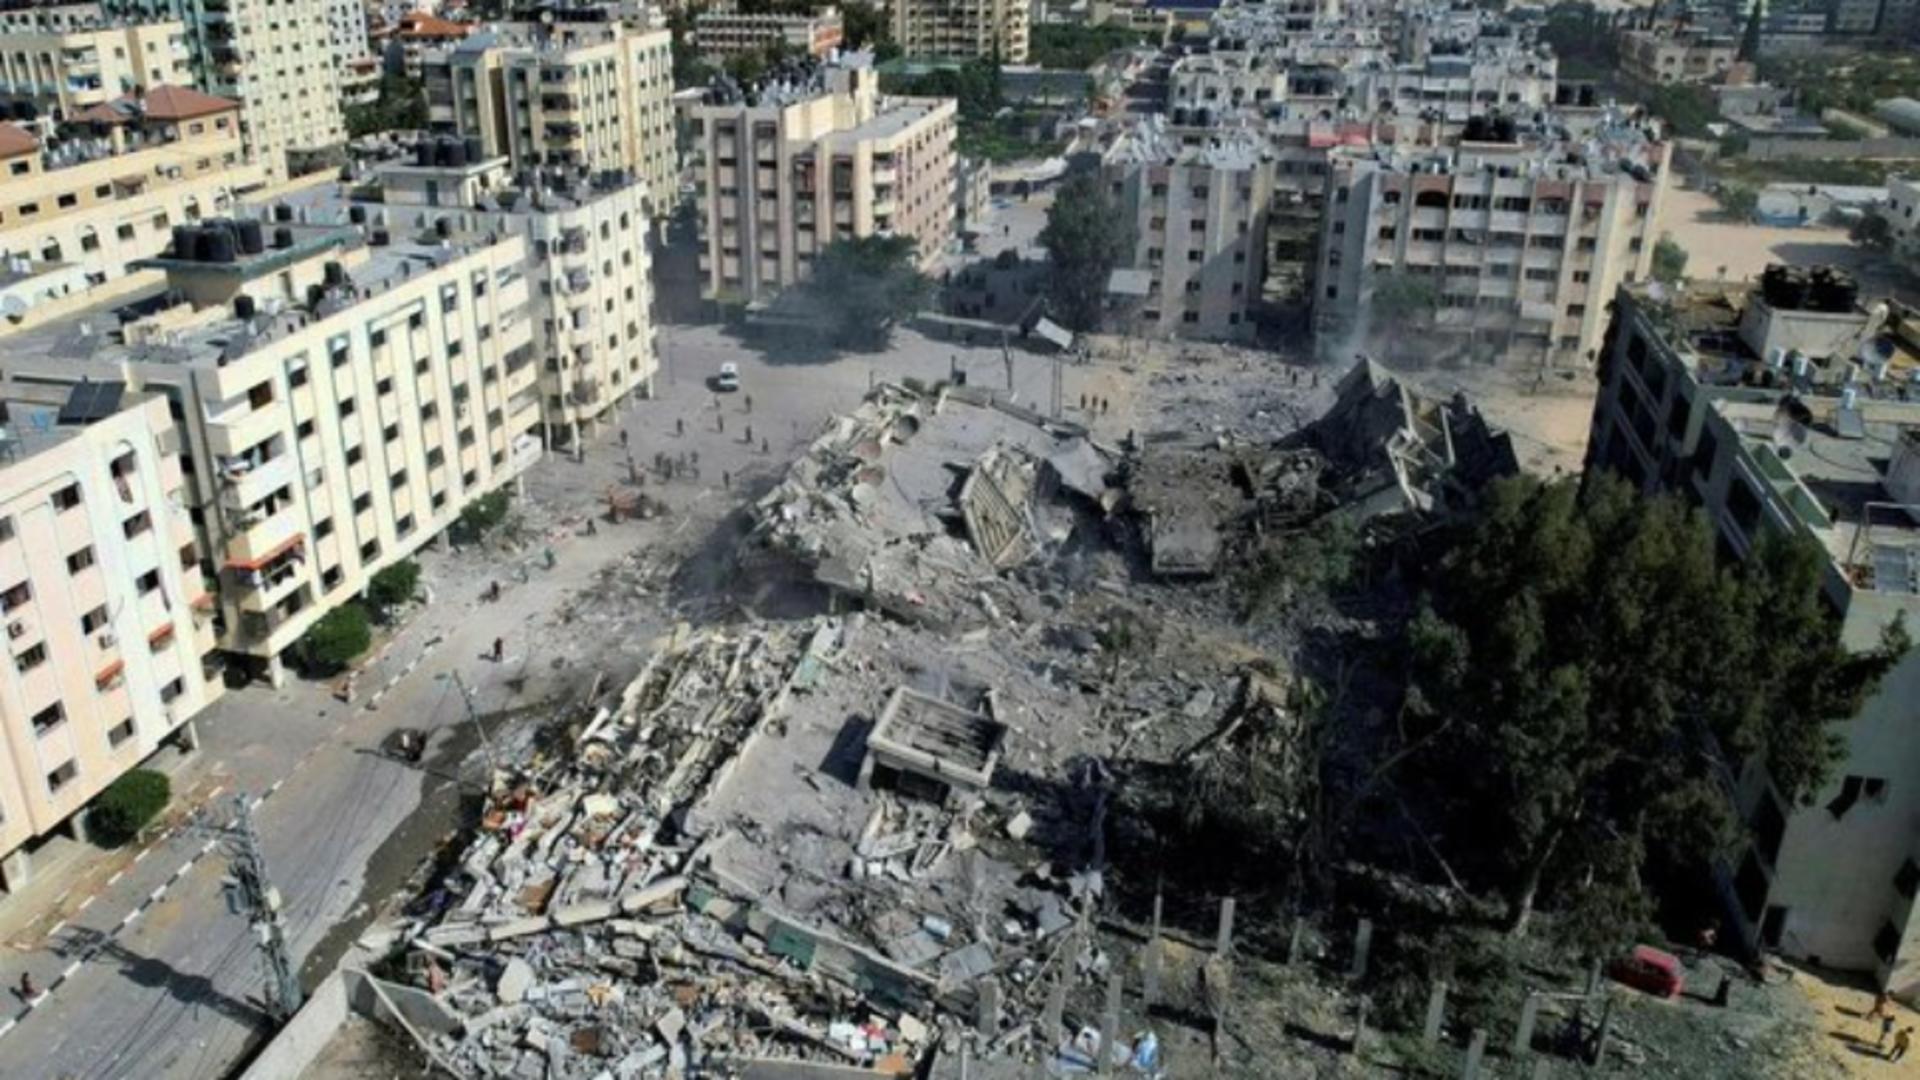 Război Israel. Armata lui Netanyahu distruge tunelurile teroriștilor – Imagini apocaliptice / Catastrofă umanitară în Fâșia Gaza